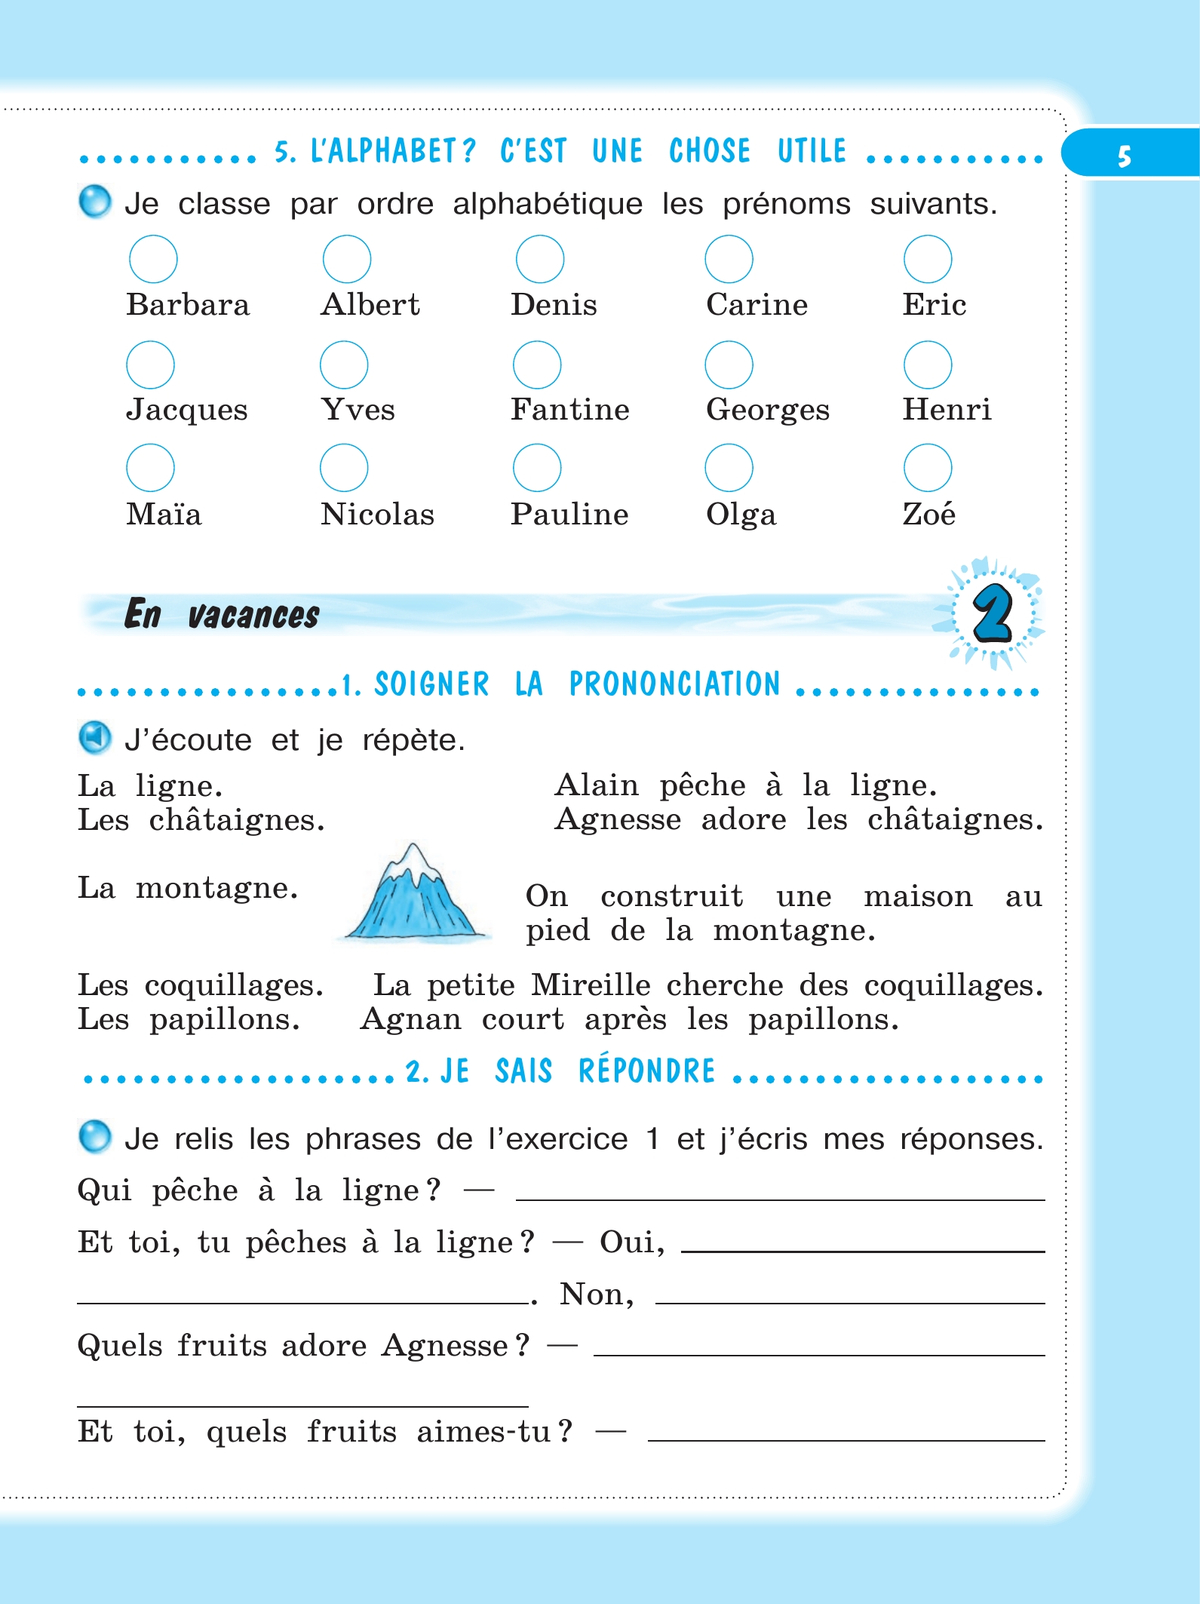 Французский язык. Рабочая тетрадь. 4 класс. 6